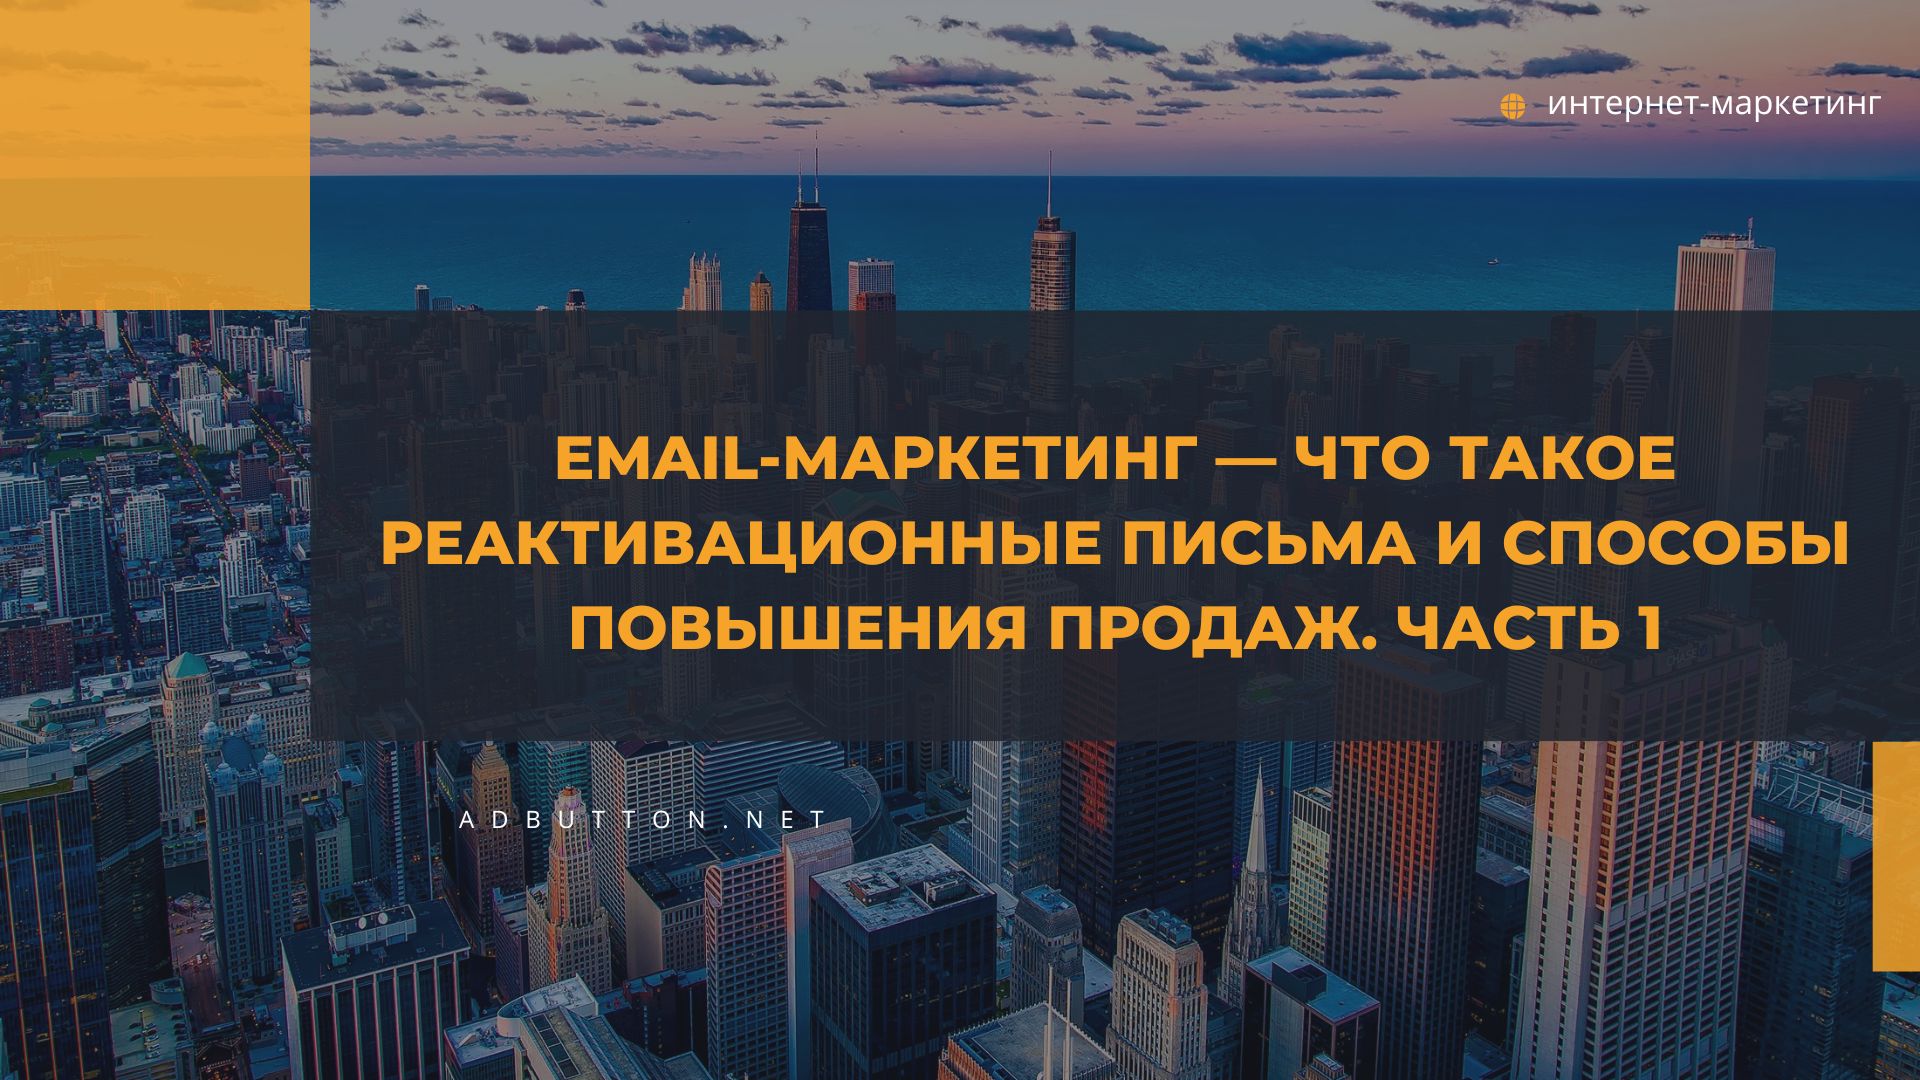 Email-маркетинг: реактивационные письма и способы вернуть клиентов (ч1)